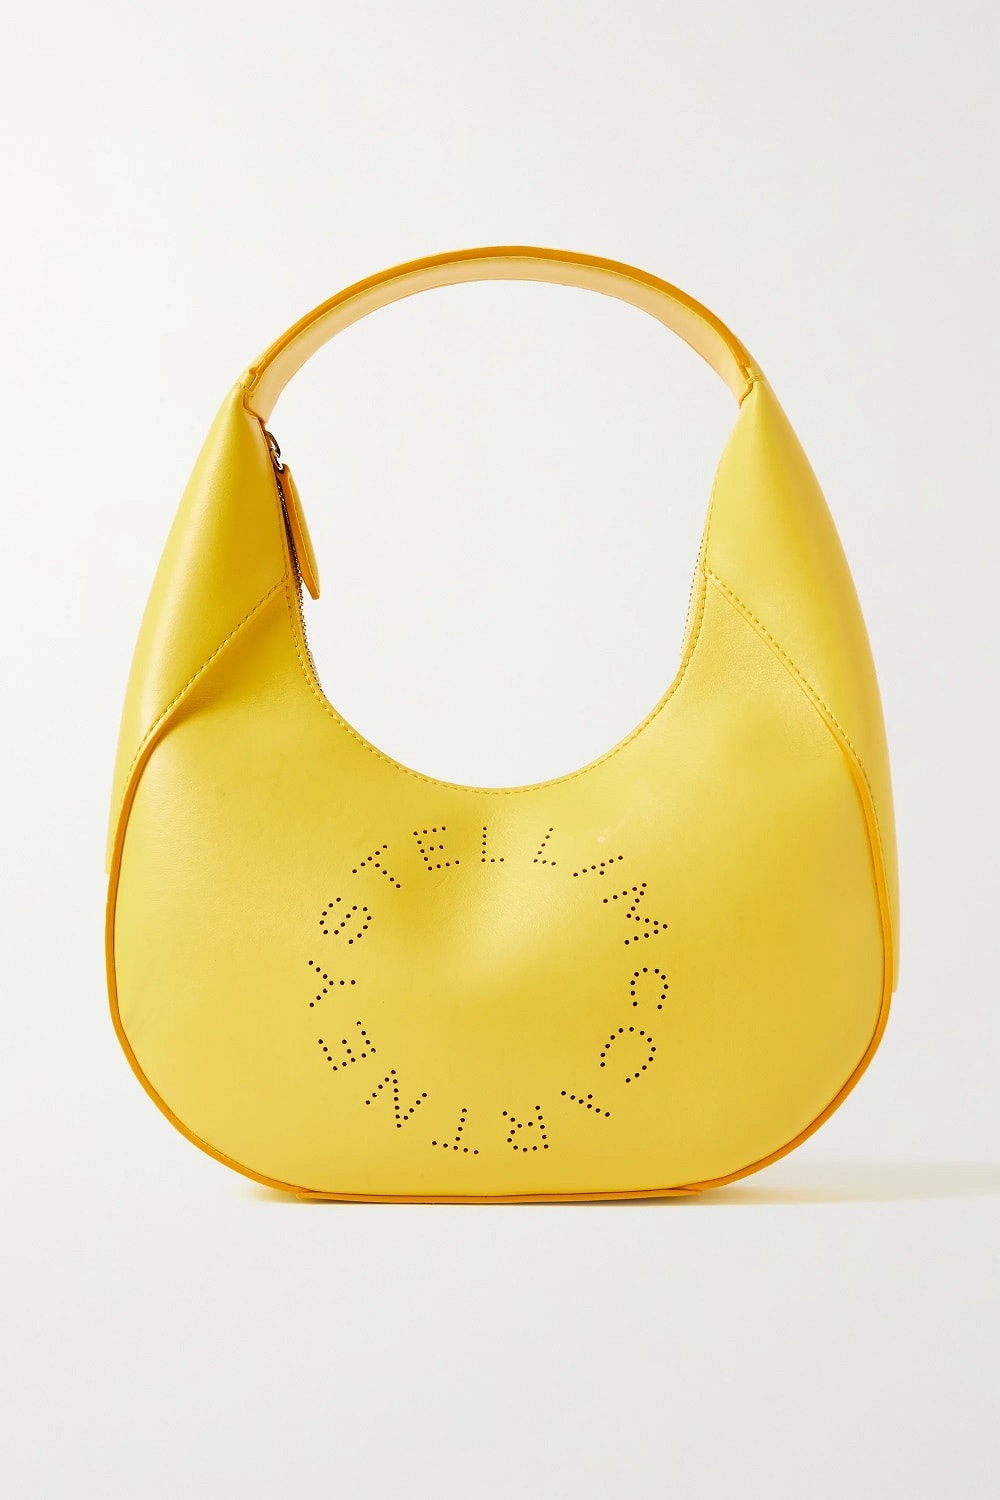 proljetne torbe u jarkim bojama 2022. Stella McCartney 